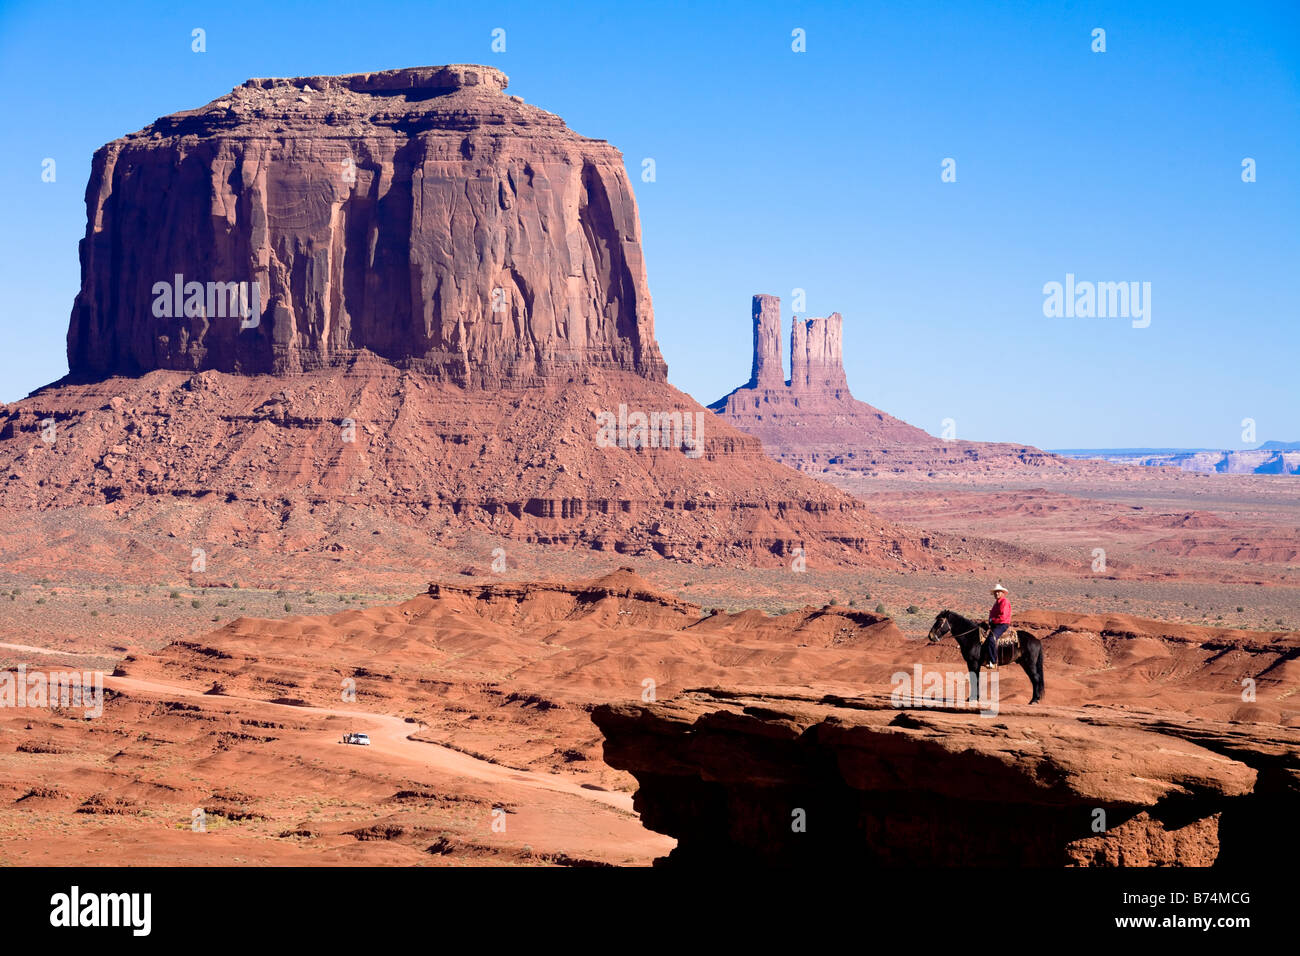 Uomo a cavallo sul bordo della scogliera di John Ford punto nel parco tribale Navajo Monument Valley, Arizona, Stati Uniti d'America Foto Stock